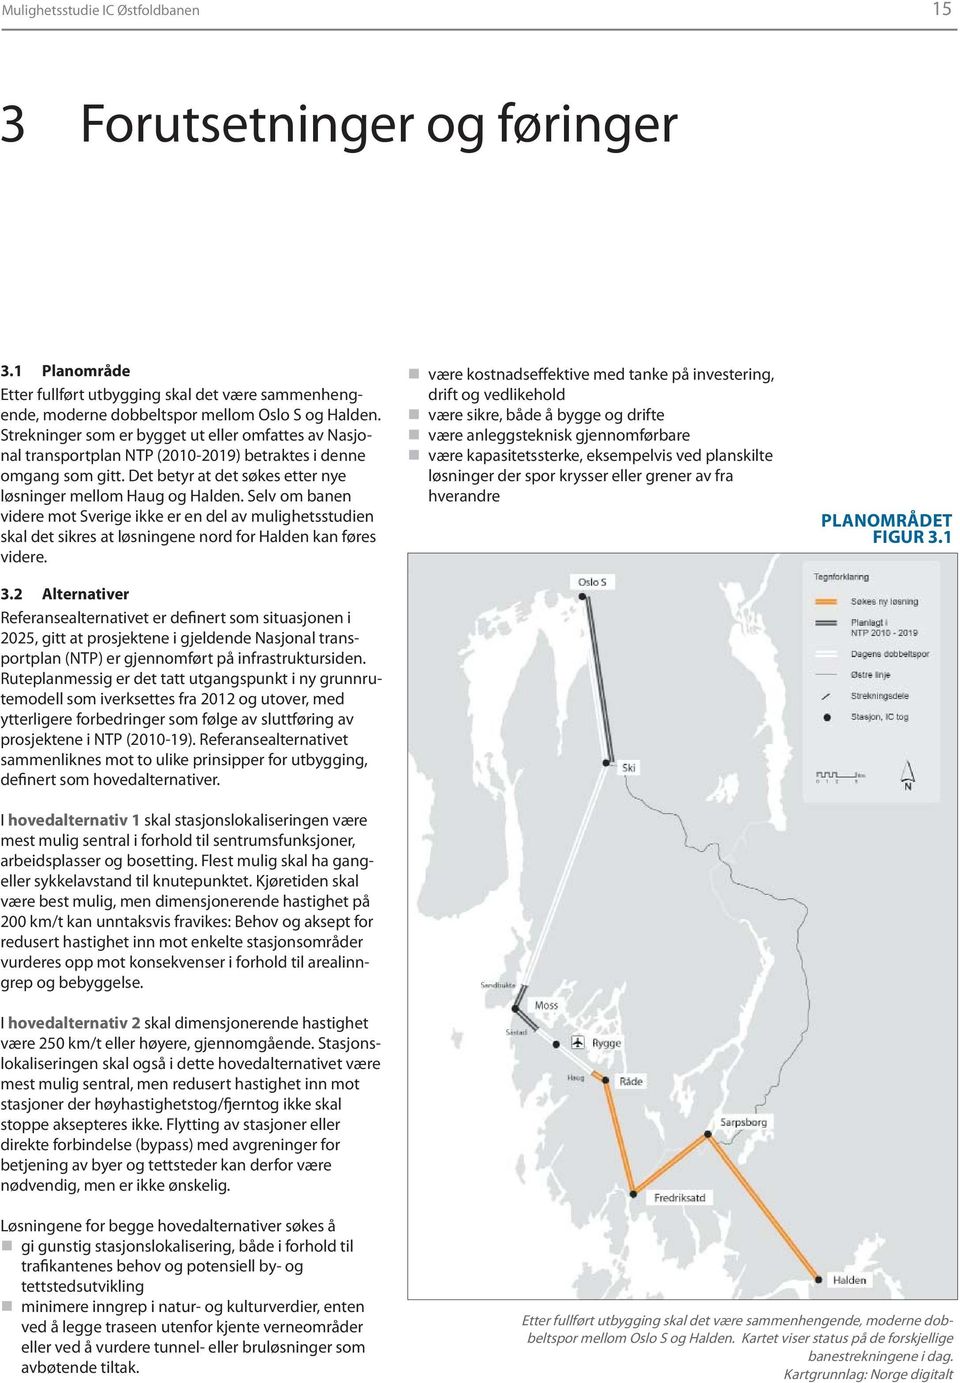 Selv om banen videre mot Sverige ikke er en del av mulighetsstudien skal det sikres at løsningene nord for Halden kan føres videre. 3.